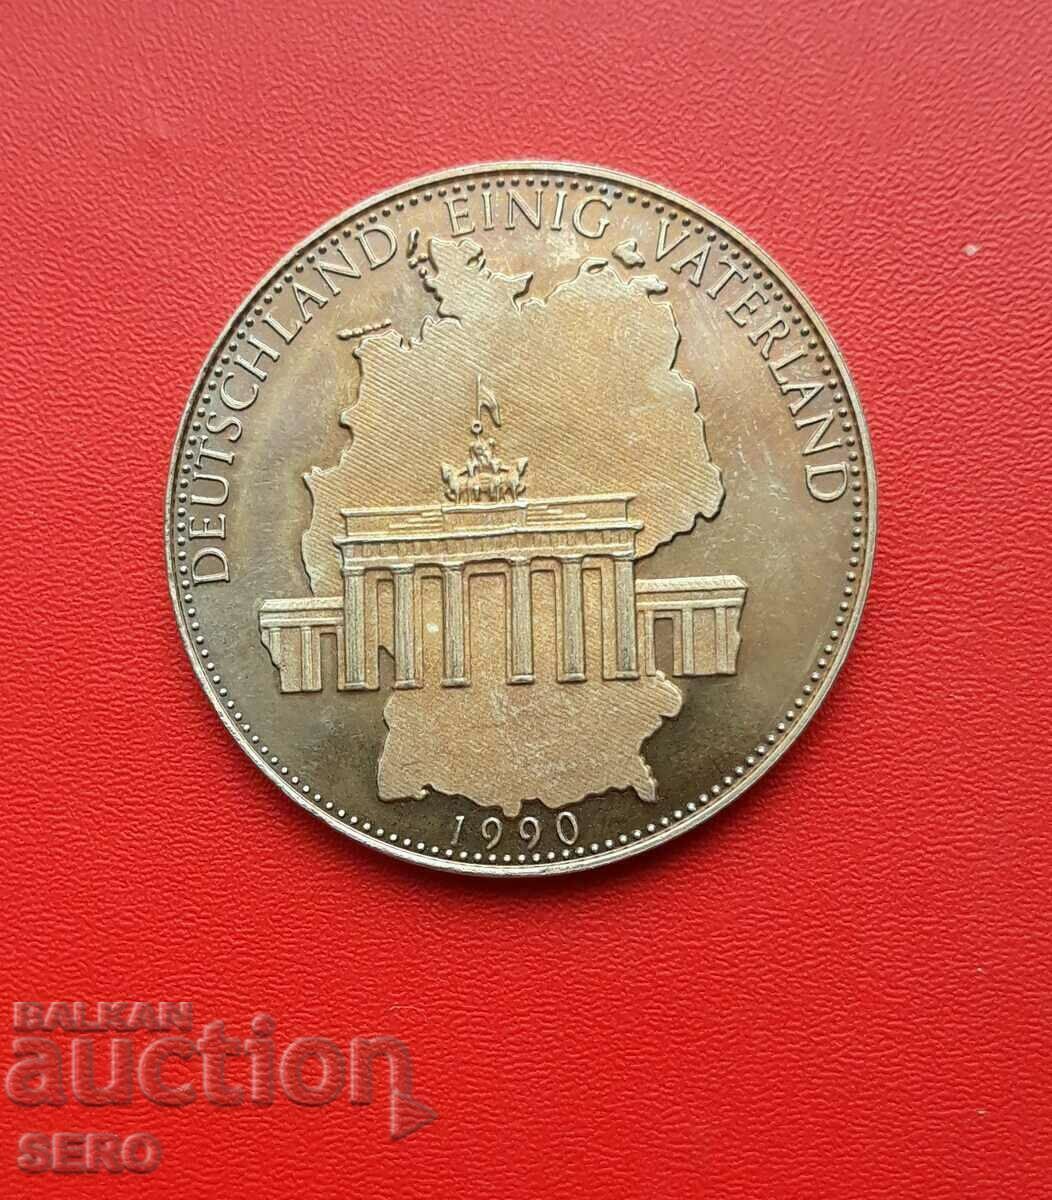 Γερμανία-Μετάλλιο 1990-Ενωμένη Γερμανία